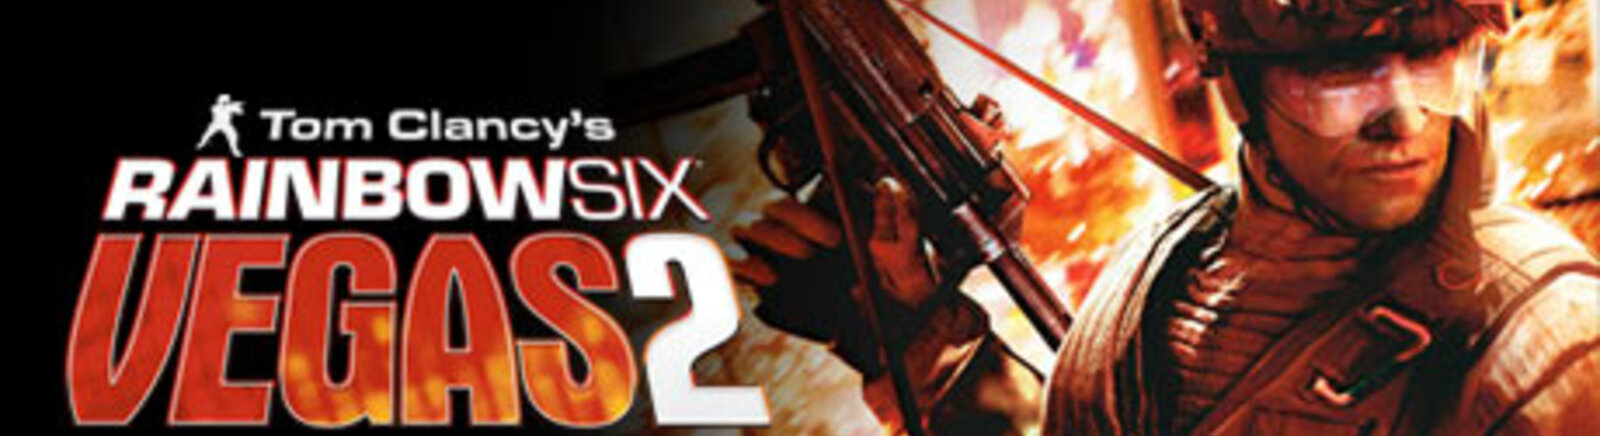 Дата выхода Tom Clancy's Rainbow Six: Vegas 2  на PC, PS3 и Xbox 360 в России и во всем мире